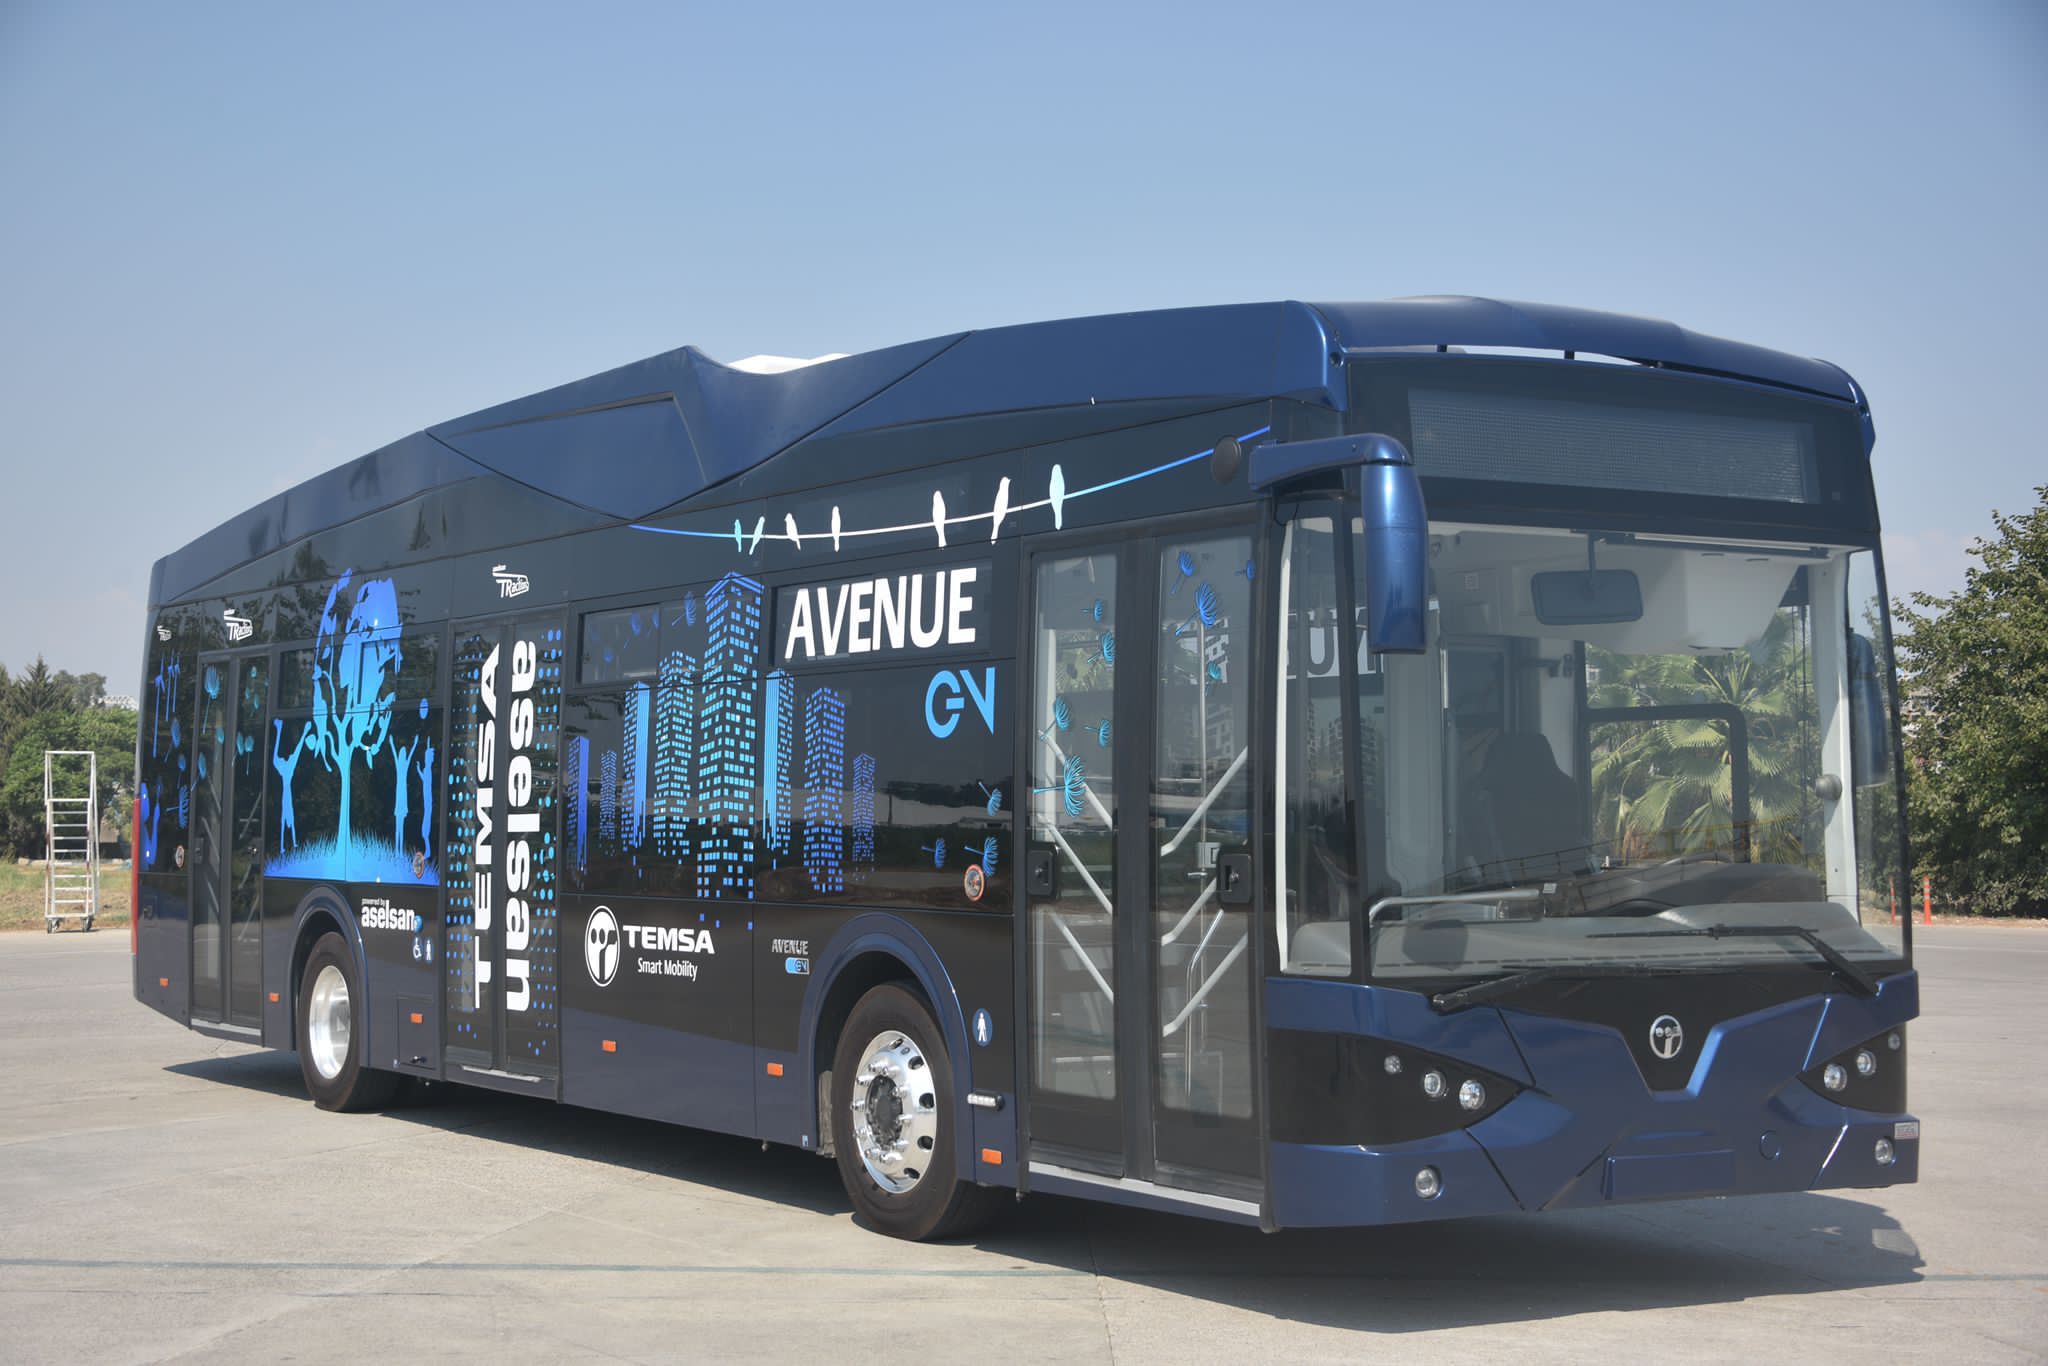  Samsun, Türkiye’de İlk Kez Elektrikli Otobüsleri Kullanan Şehir Olacak